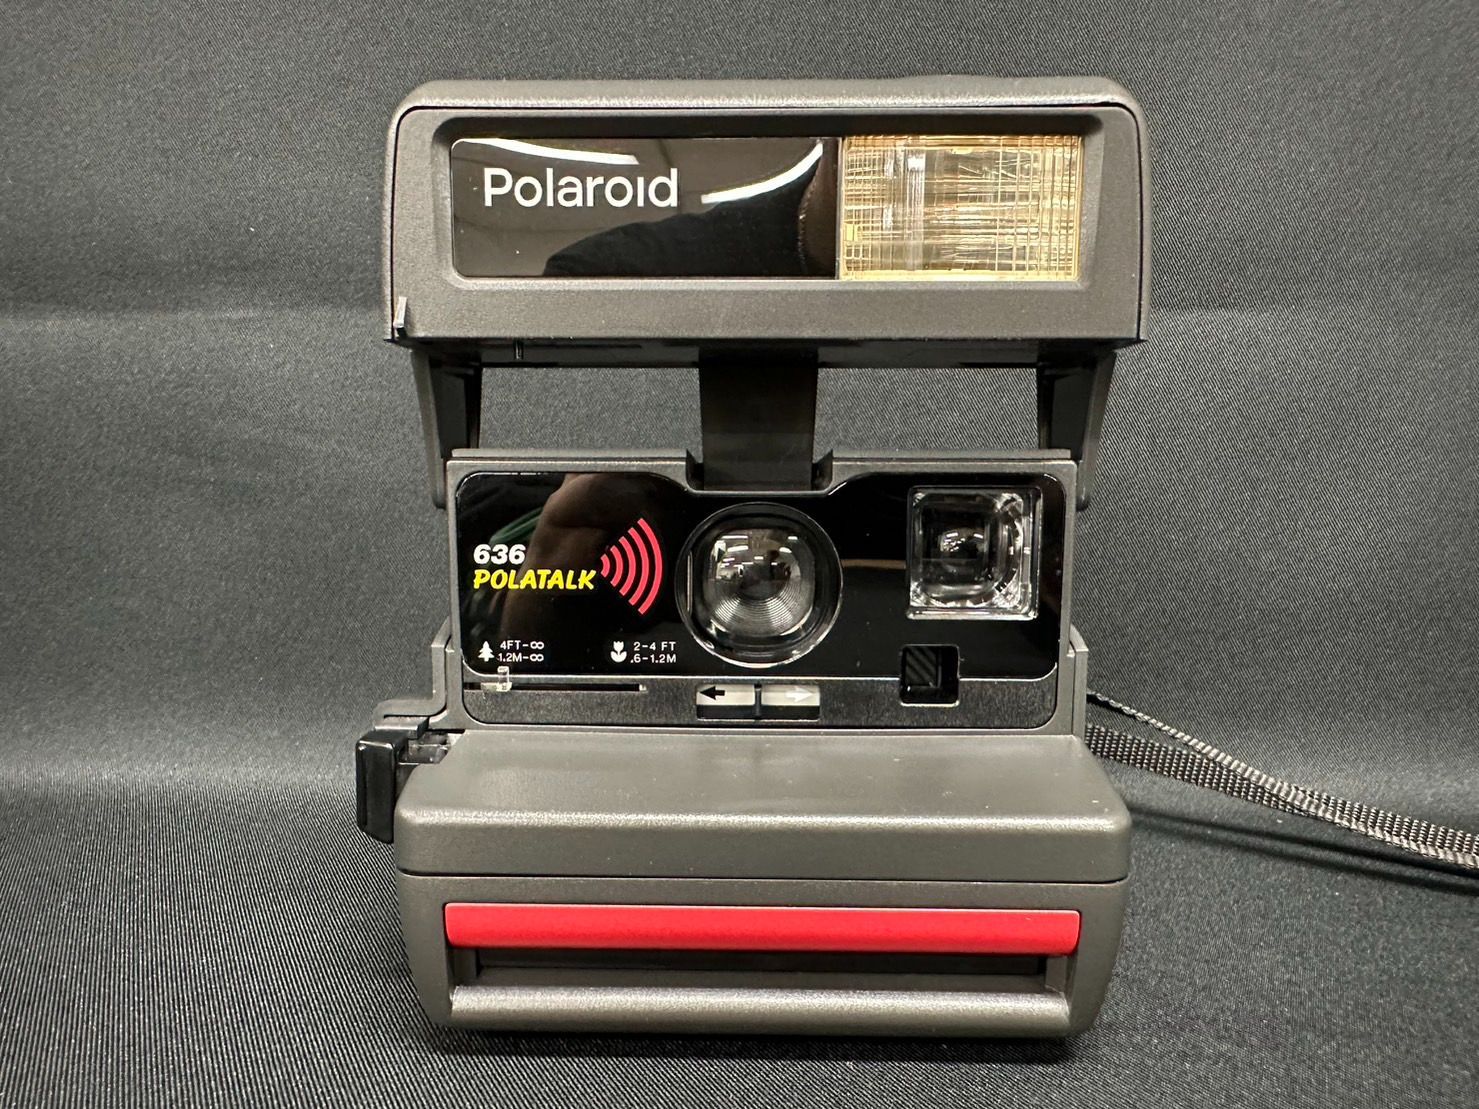 POLAROID 636 POLATALK ポラロイド 636 ポラトーク ポラロイドカメラ G-SHOP メルカリ